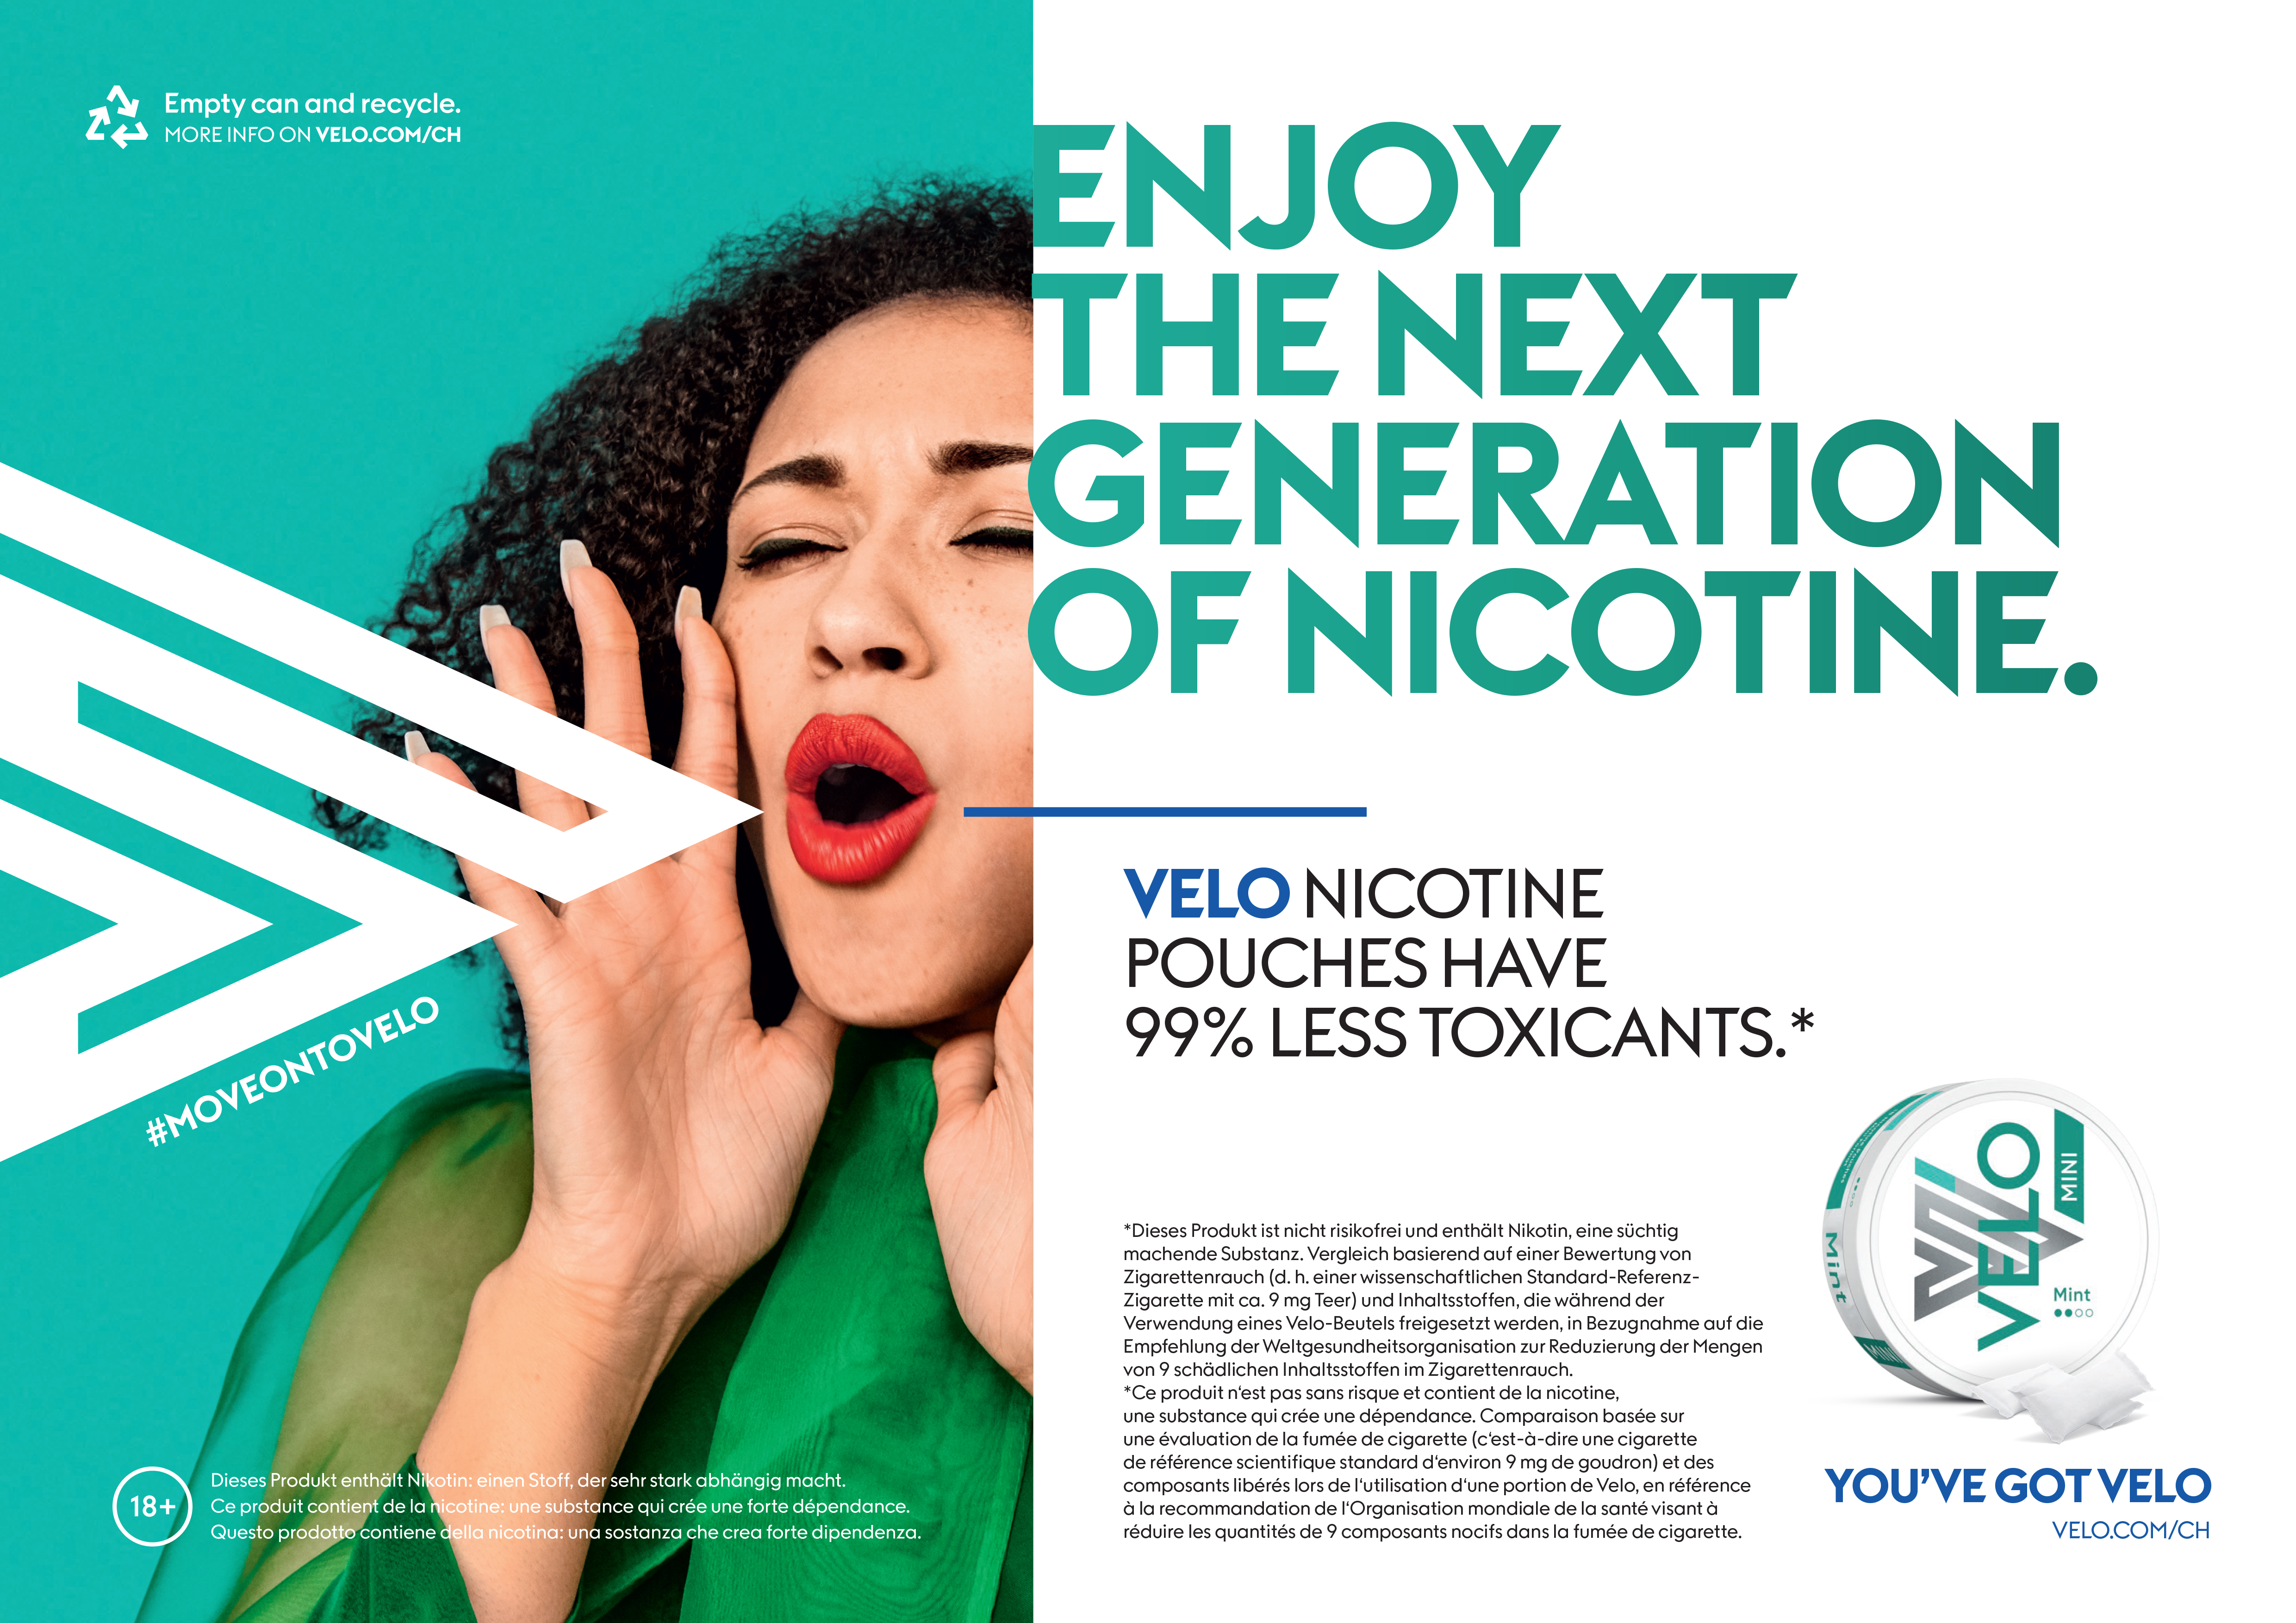 Velo-Nikotinbeutel enthalten 99% weniger Giftstoffe